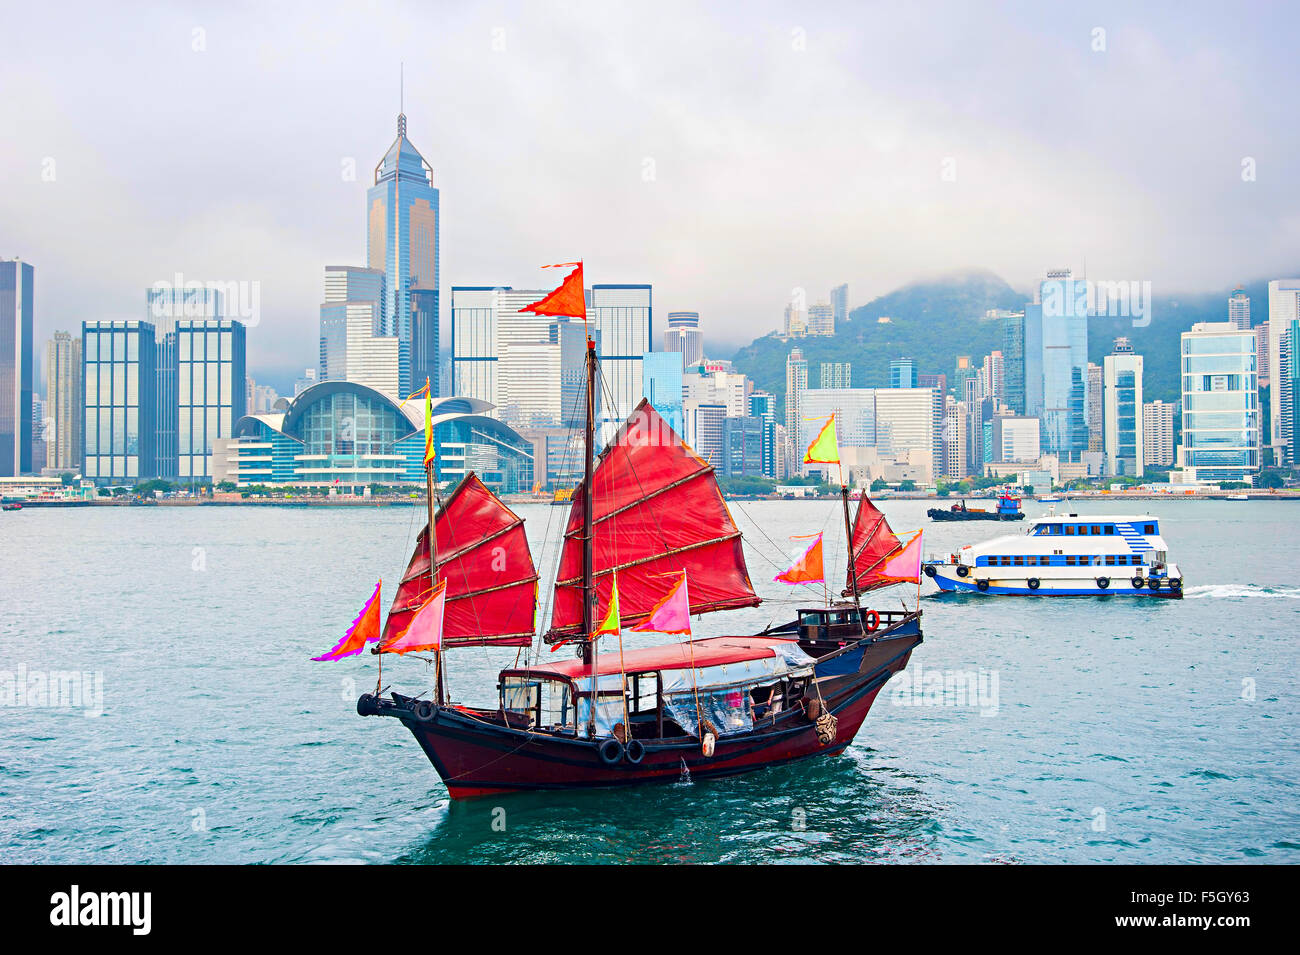 De style chinois traditionnel voilier naviguant dans le port de Hong Kong Banque D'Images